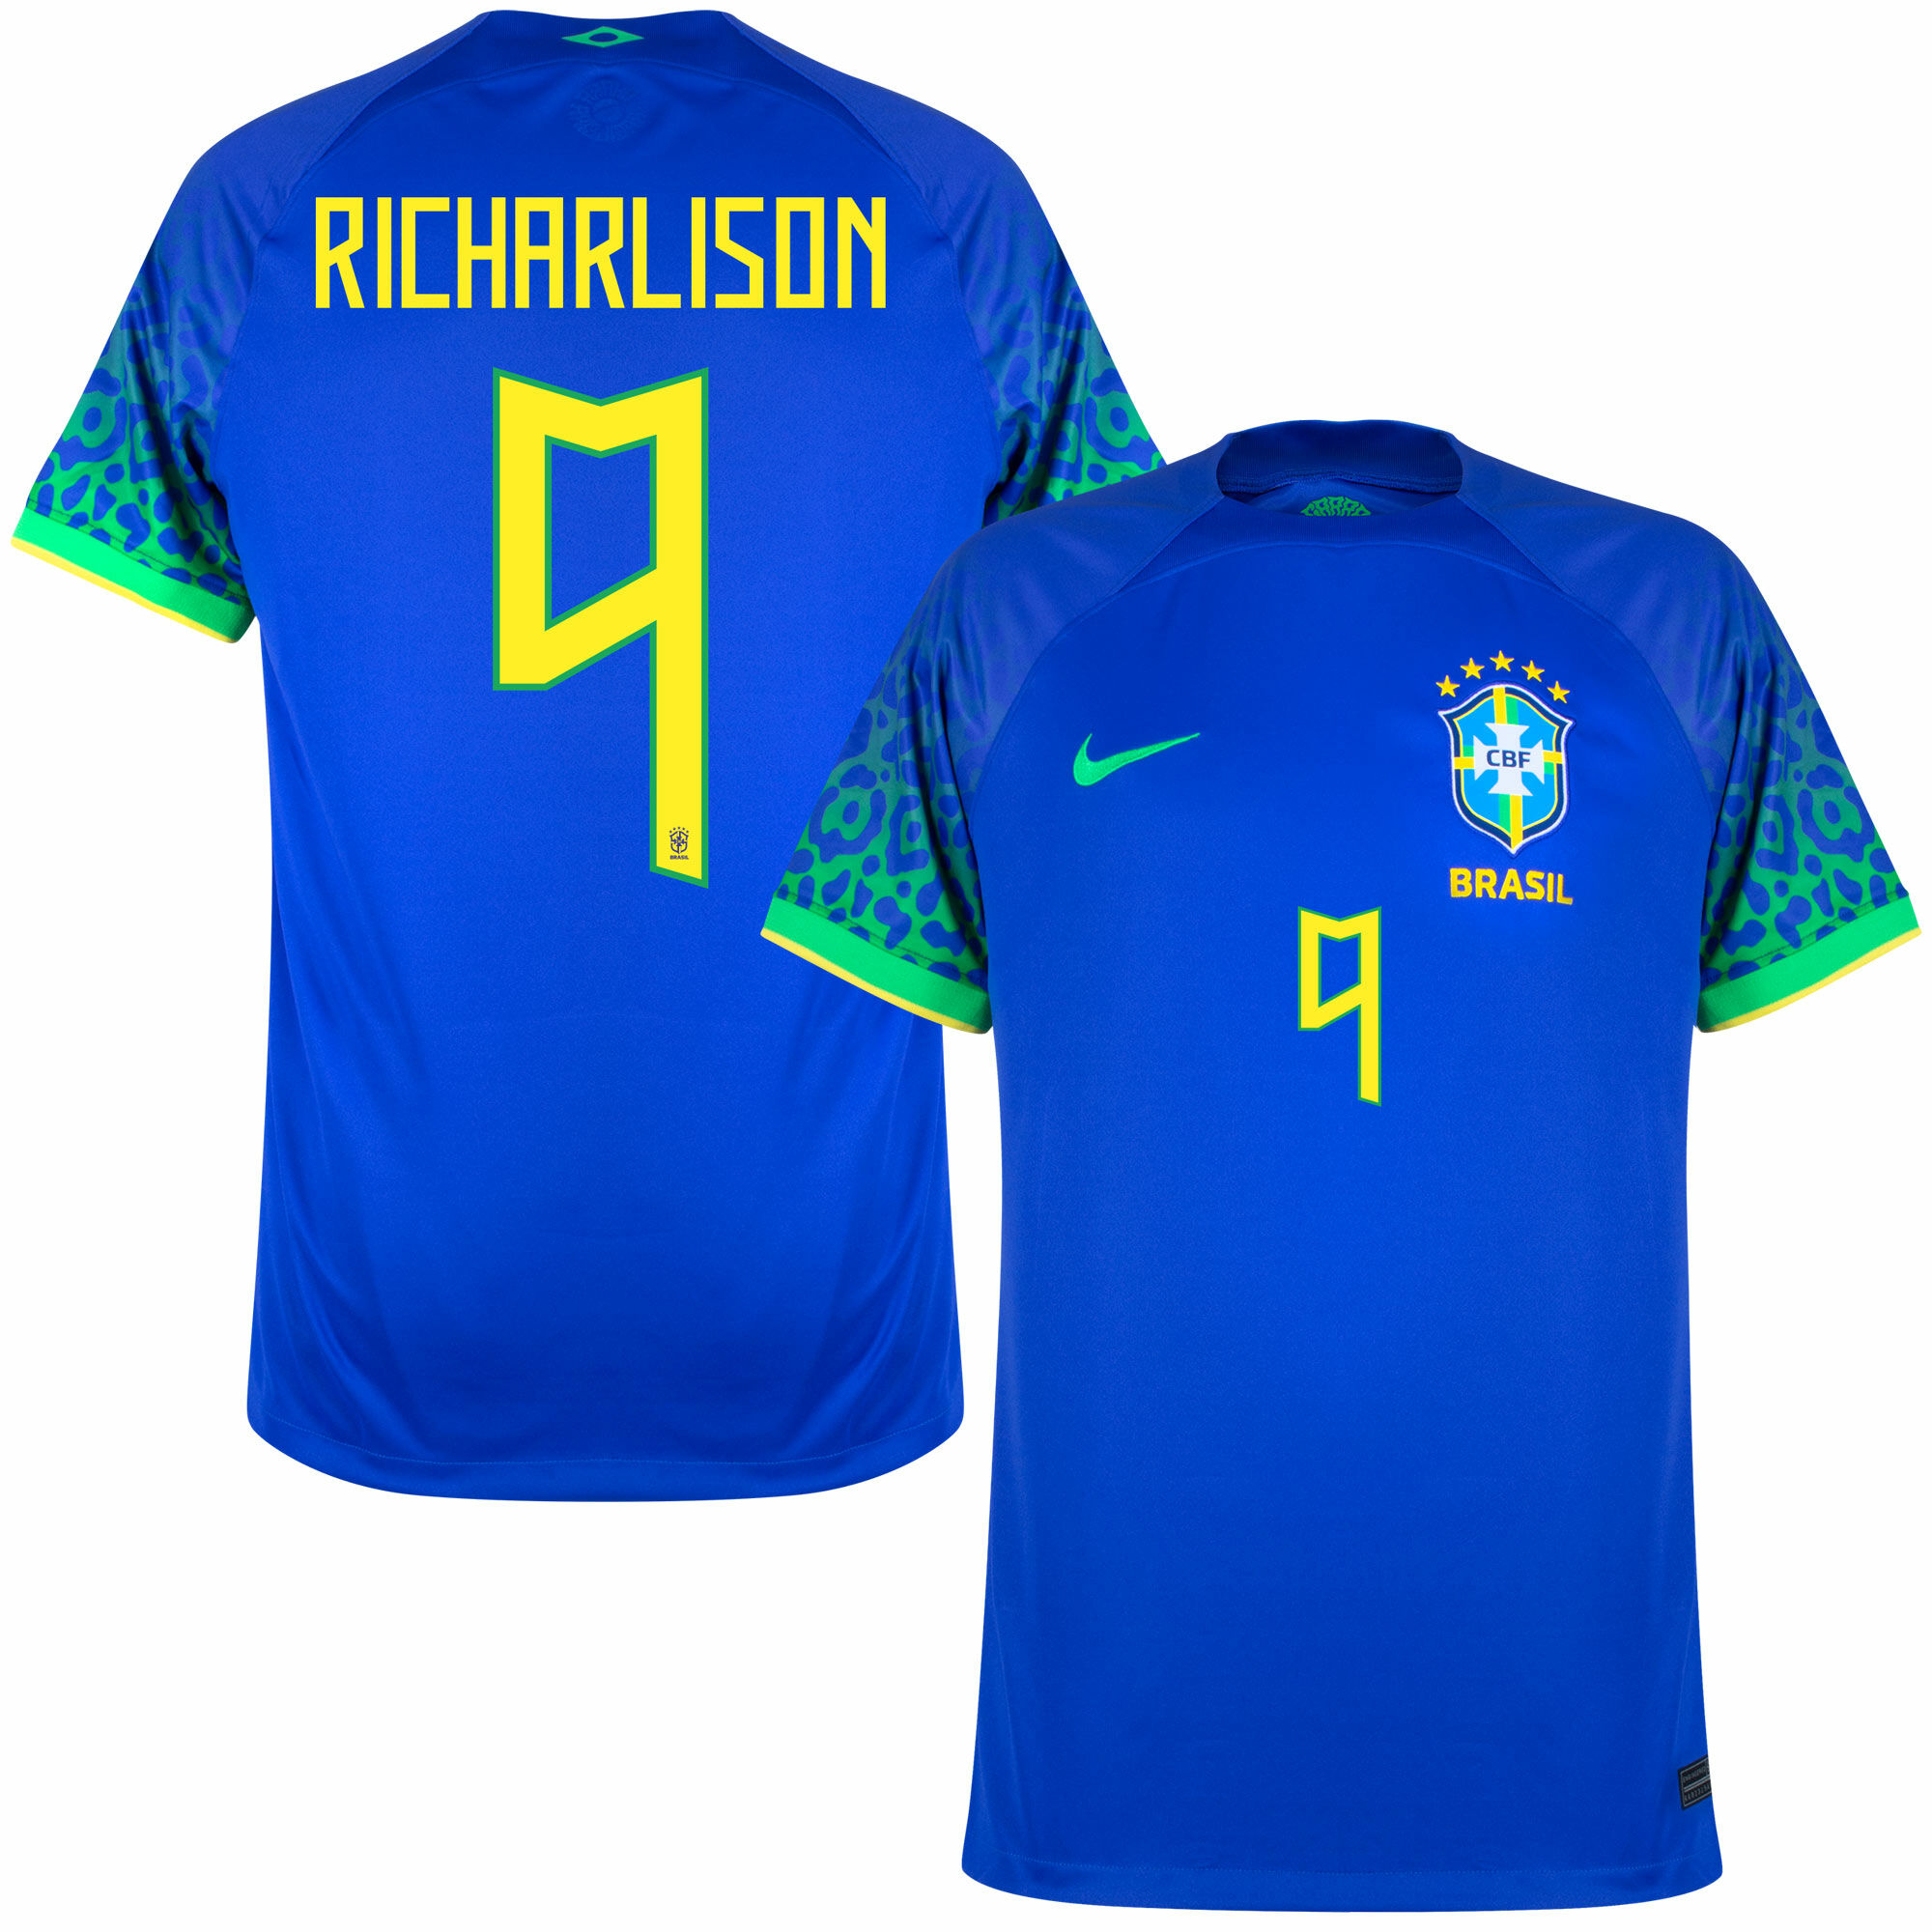 Brazílie - Dres fotbalový - Richarlison, oficiální potisk, sezóna 2022/23, modrý, číslo 9, venkovní